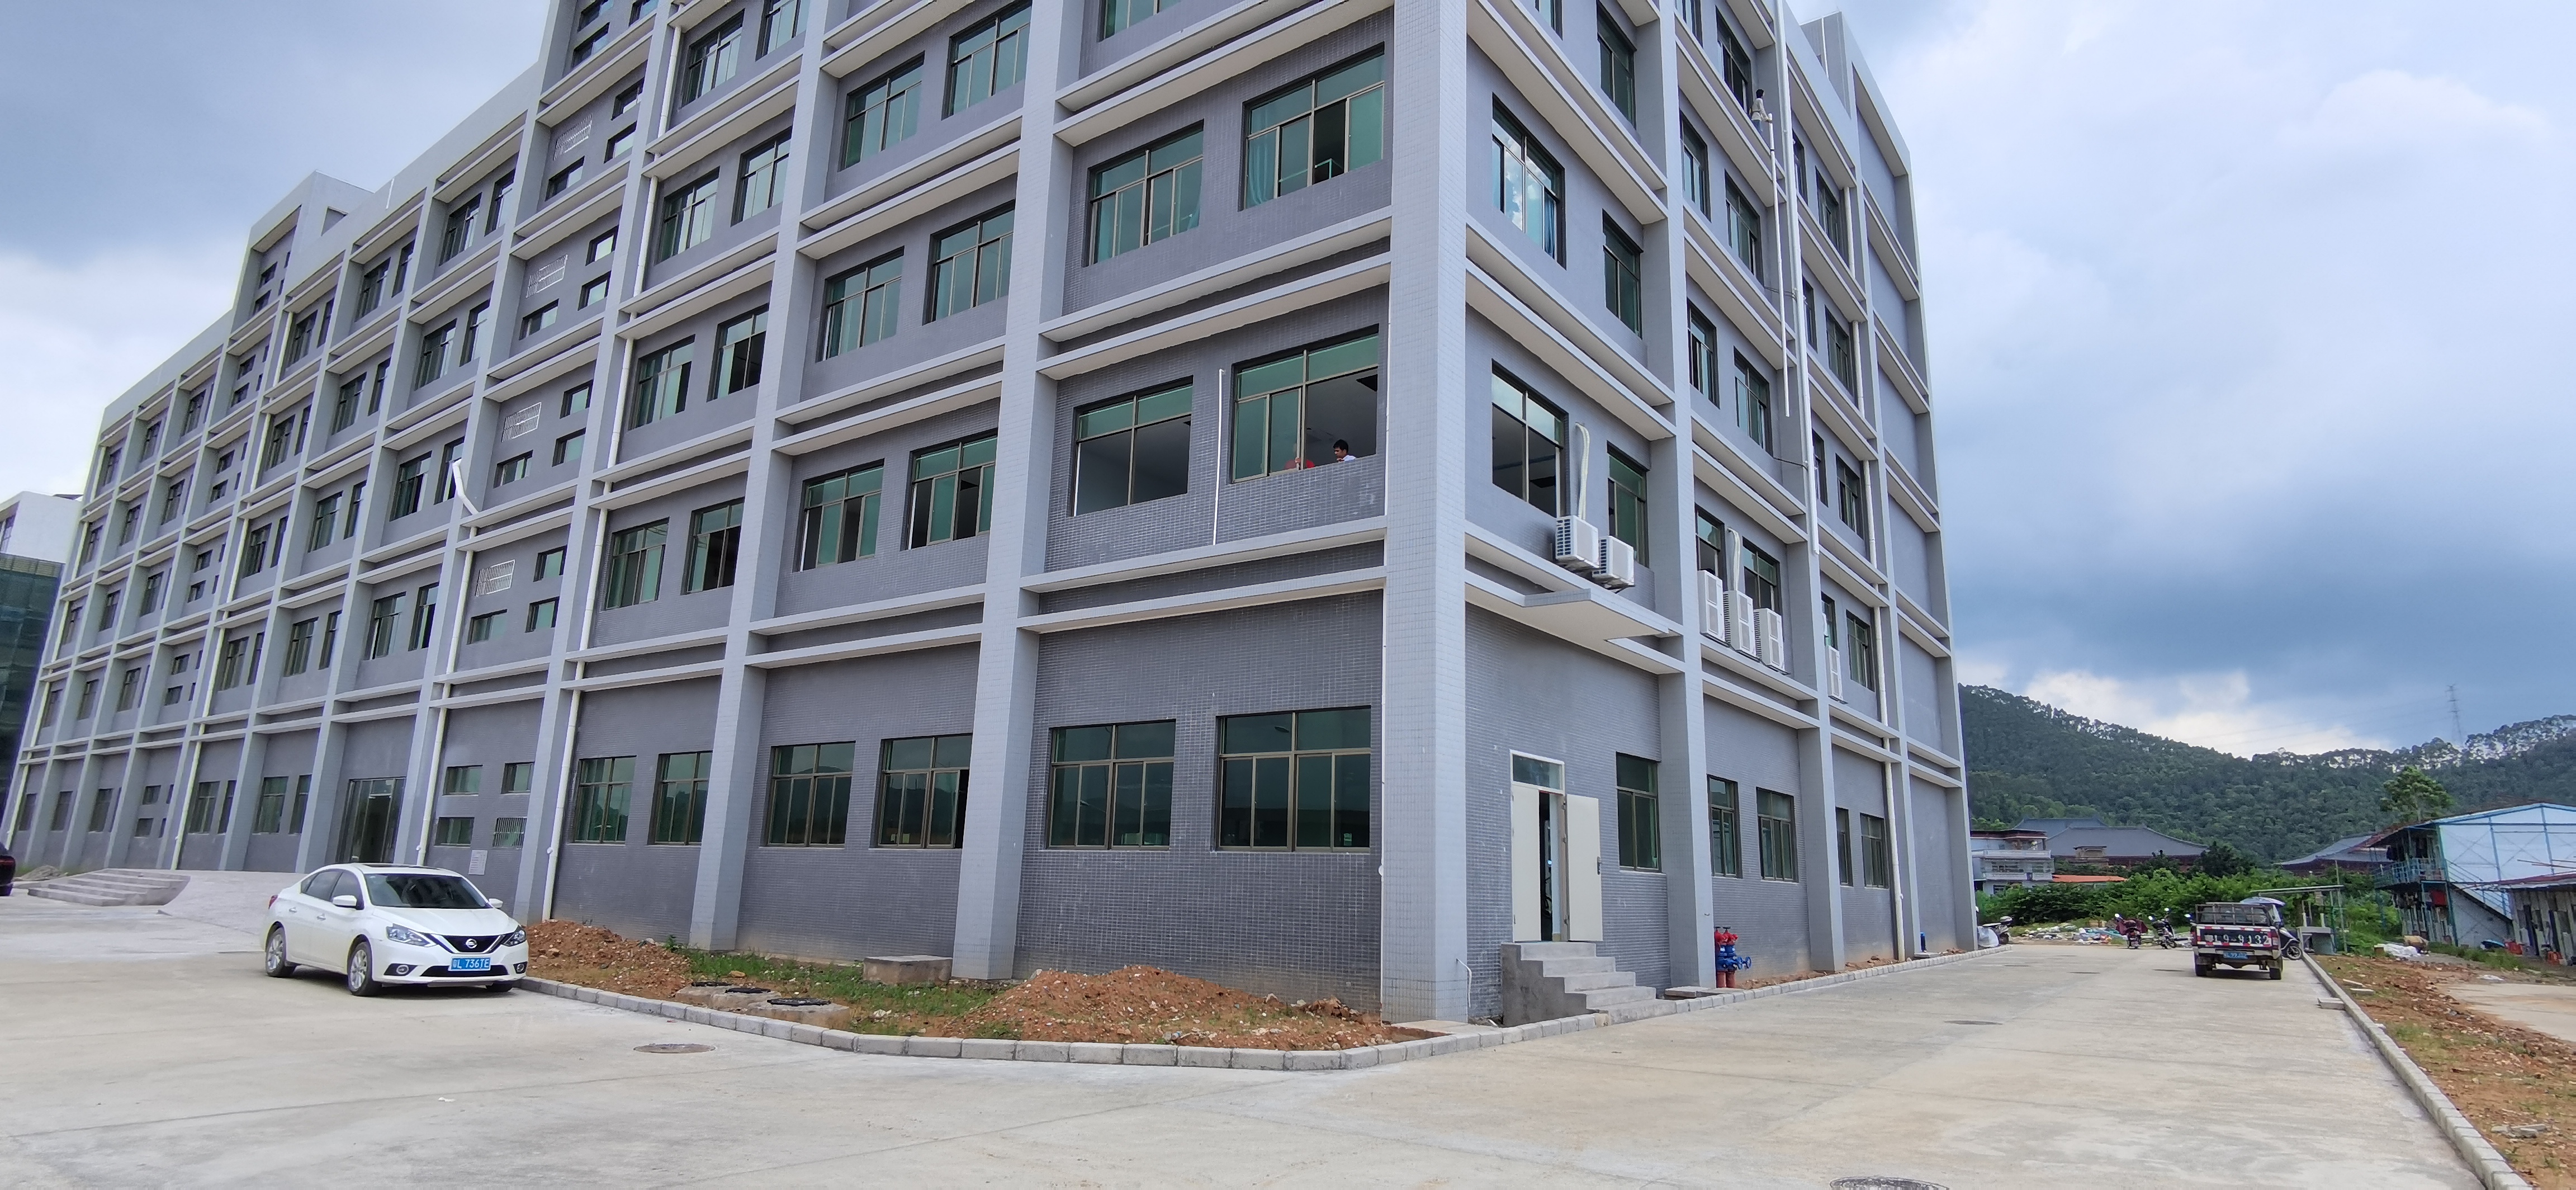 龙溪镇成熟工业园一楼招租面积1889㎡高6米适合做展厅、仓库